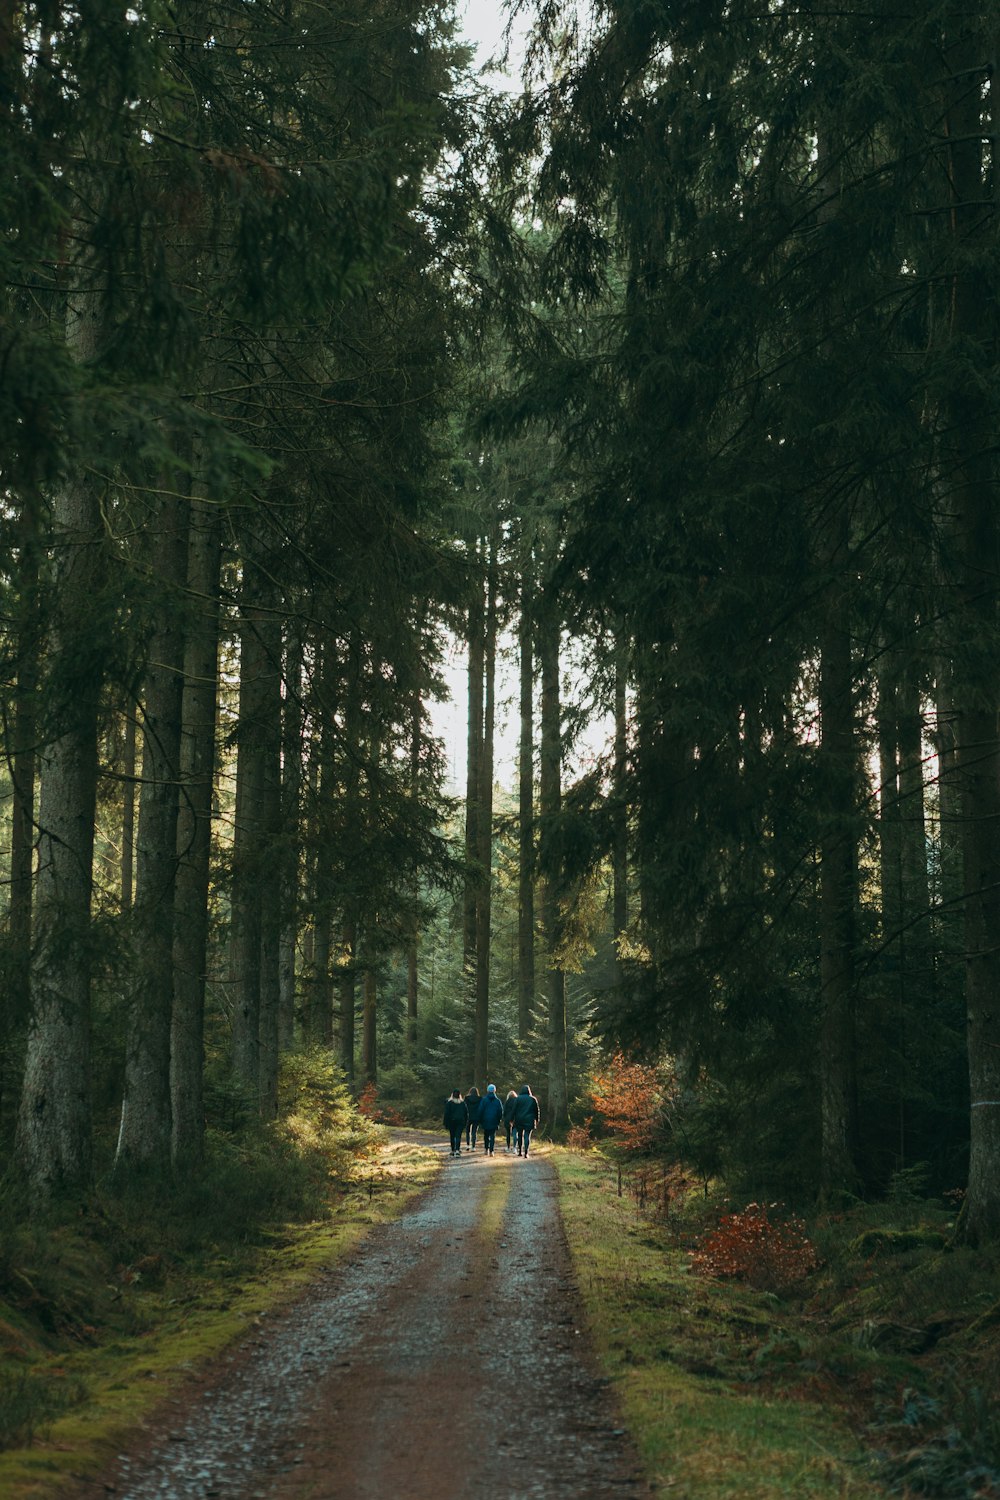 Eine Gruppe von Menschen, die eine unbefestigte Straße im Wald entlang gehen